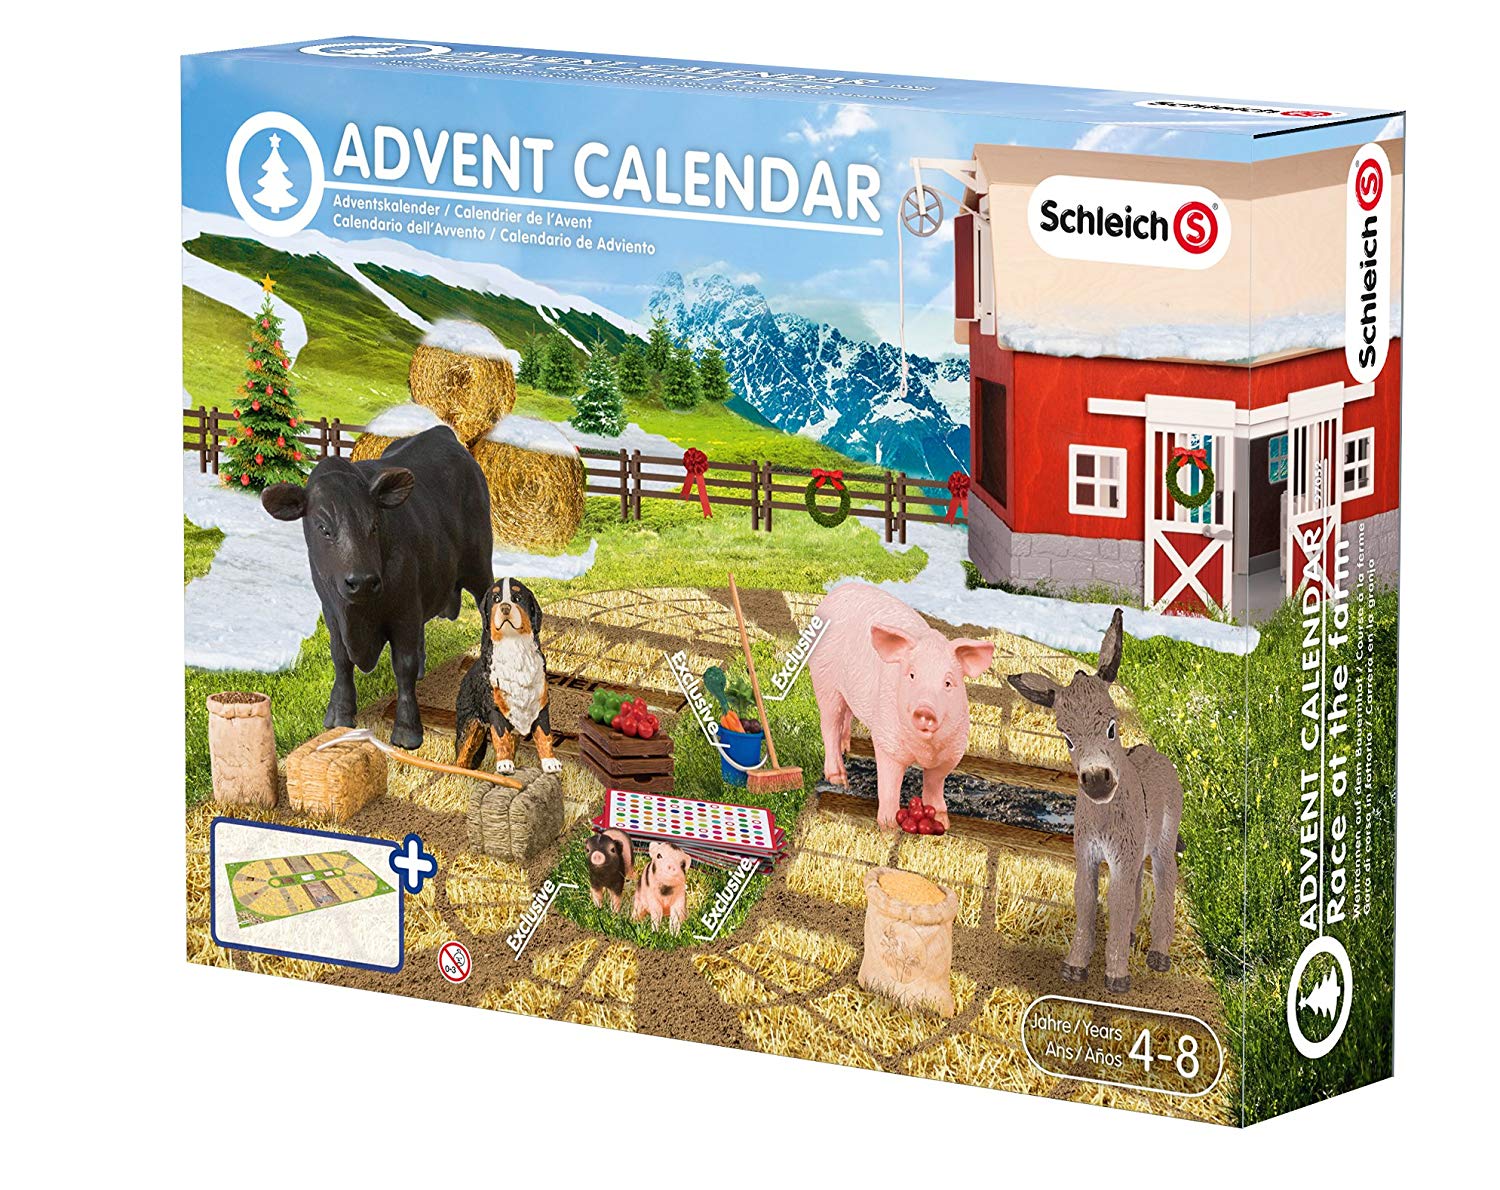 Schleich Farm Christmas Advent Calendar